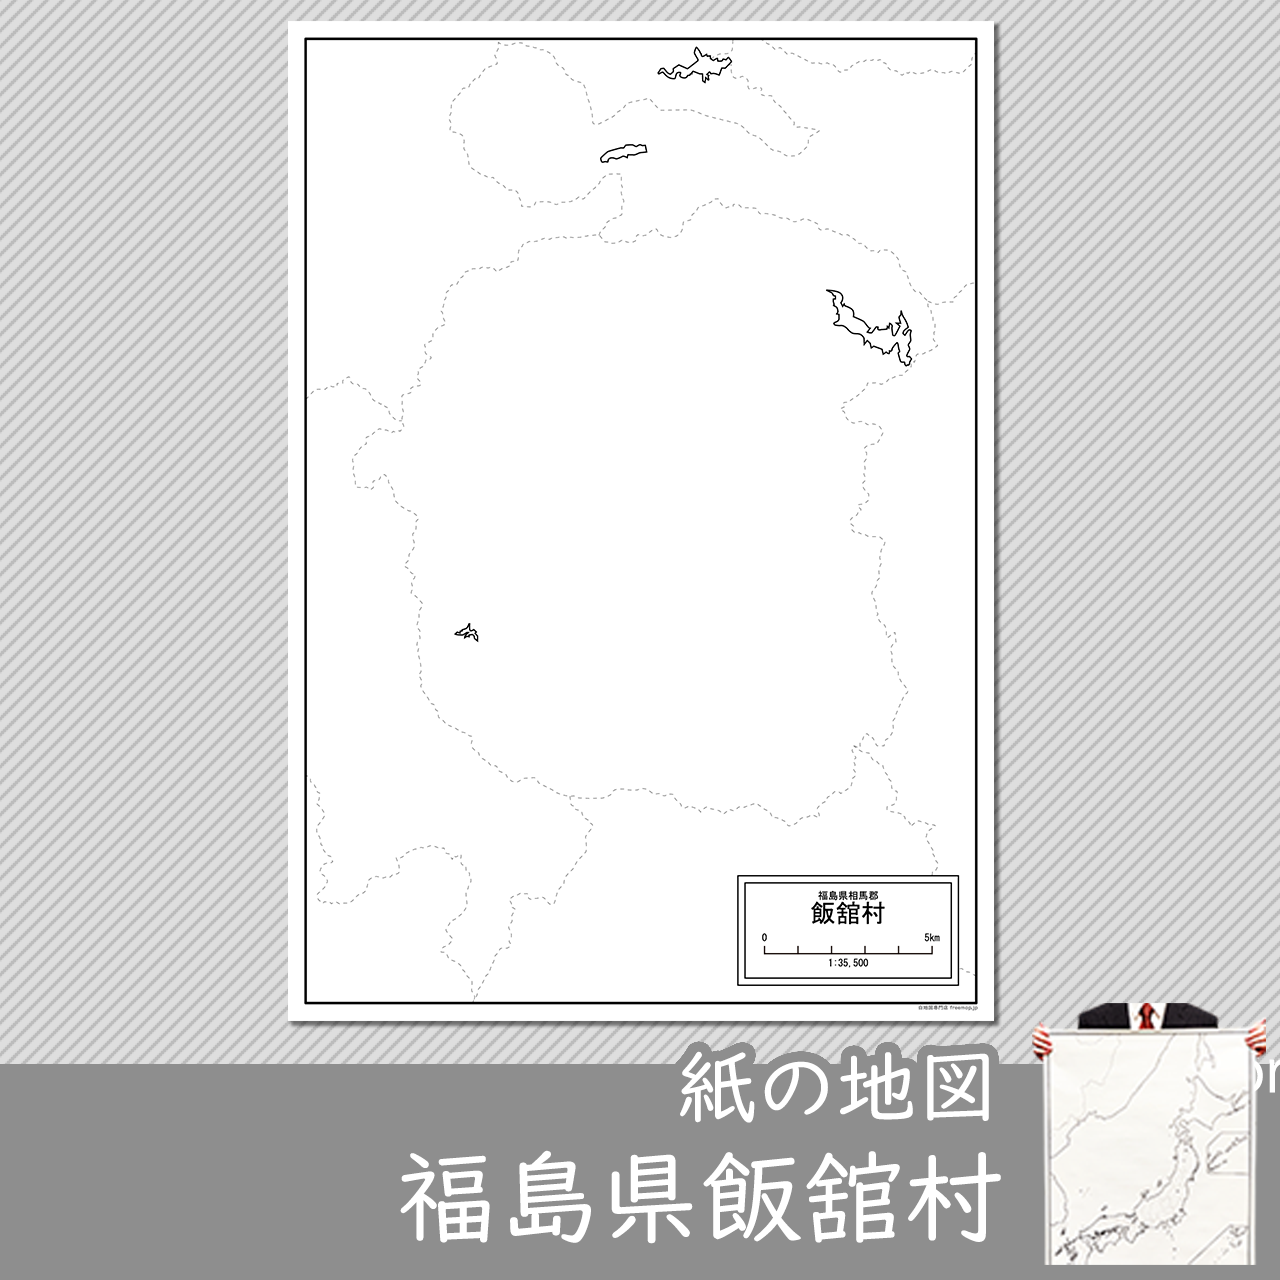 飯舘村の紙の白地図のサムネイル